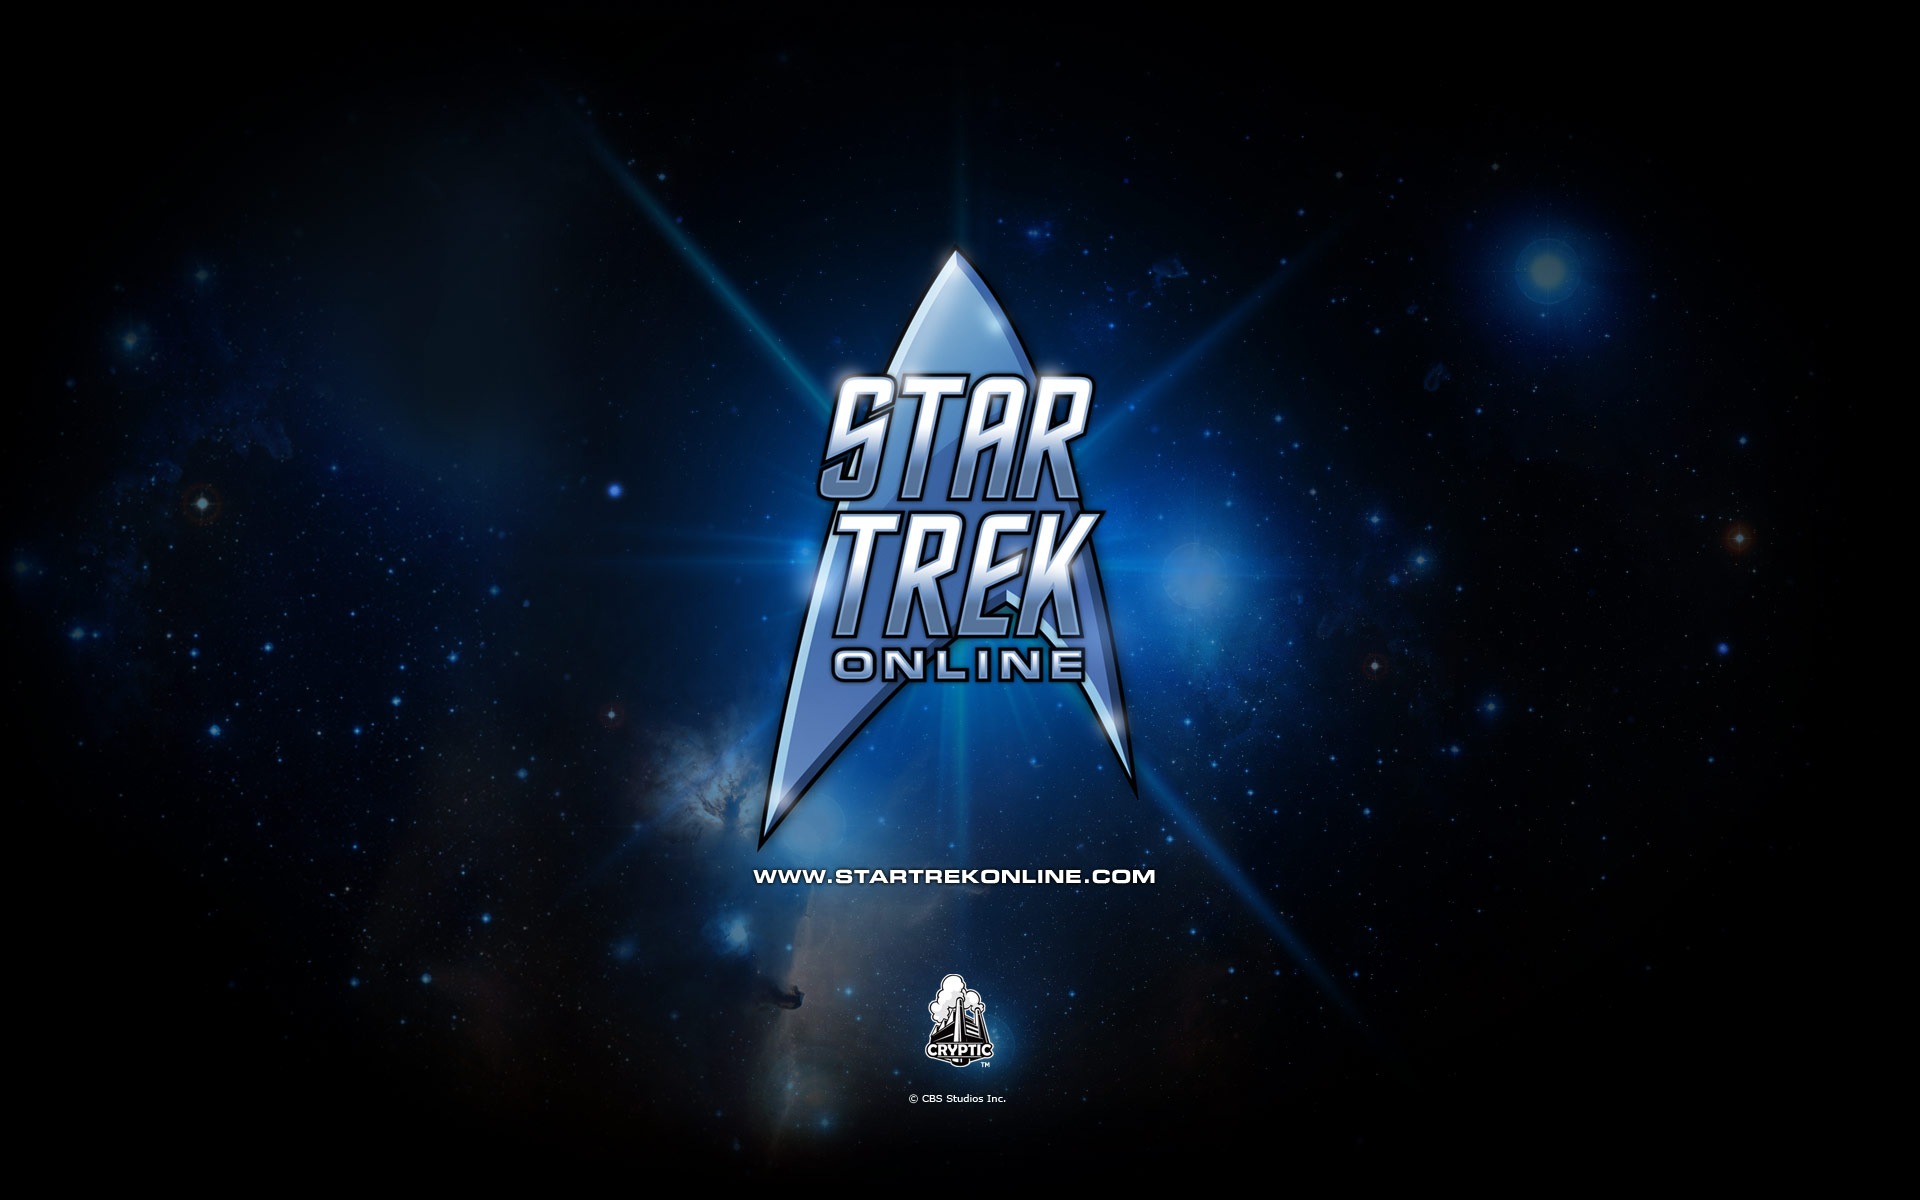 Star Trek Online 星际迷航在线 游戏高清壁纸19 - 1920x1200